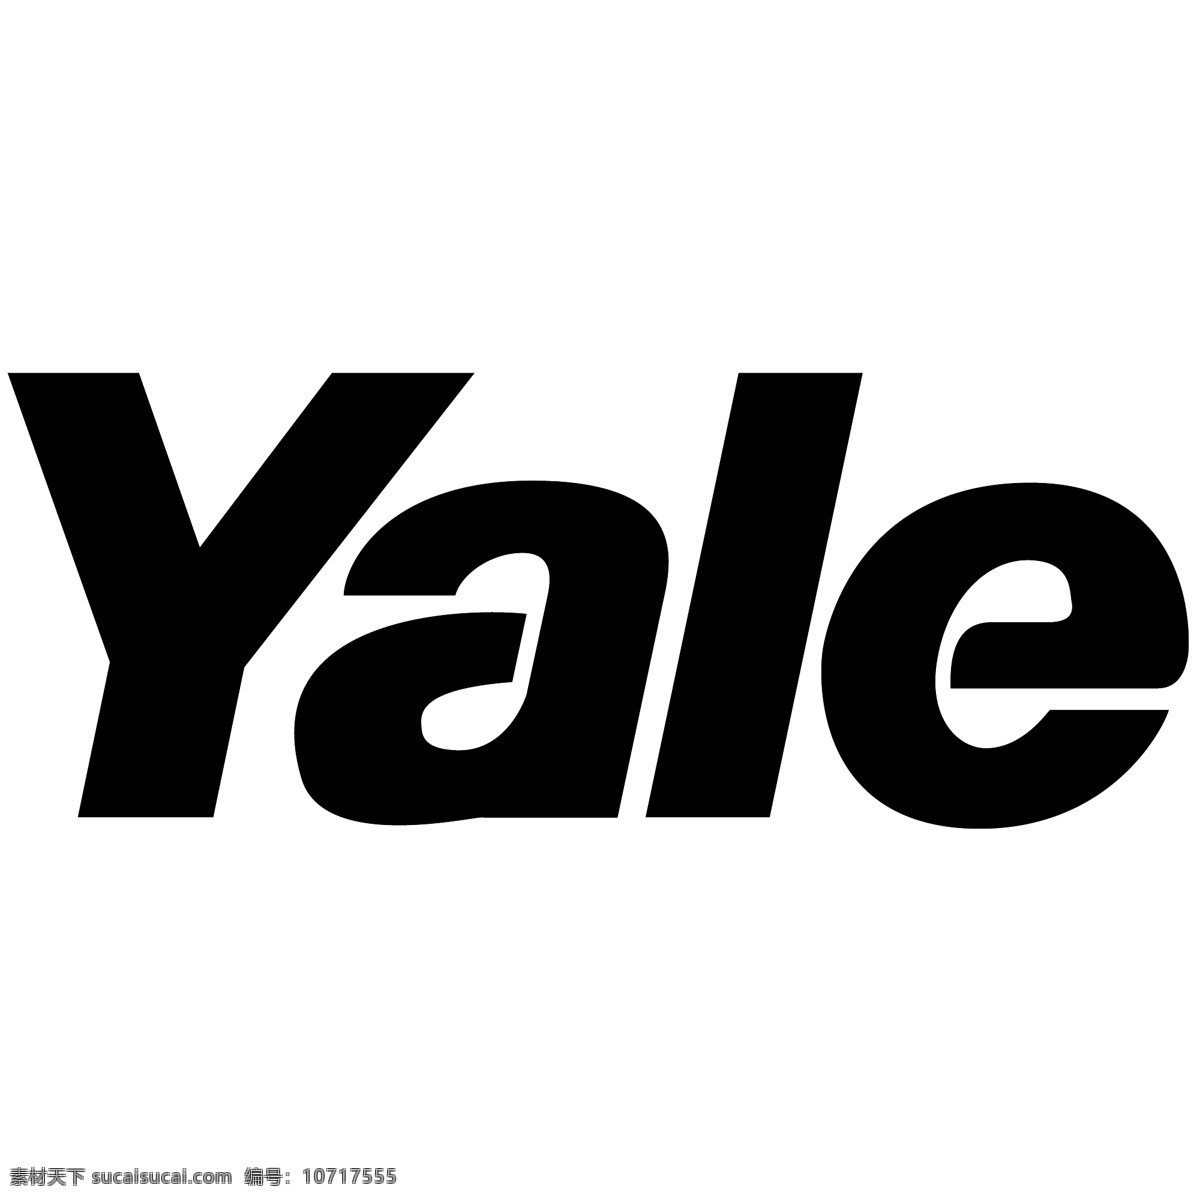 耶鲁大学 免费 标志 标识 耶鲁 psd源文件 logo设计